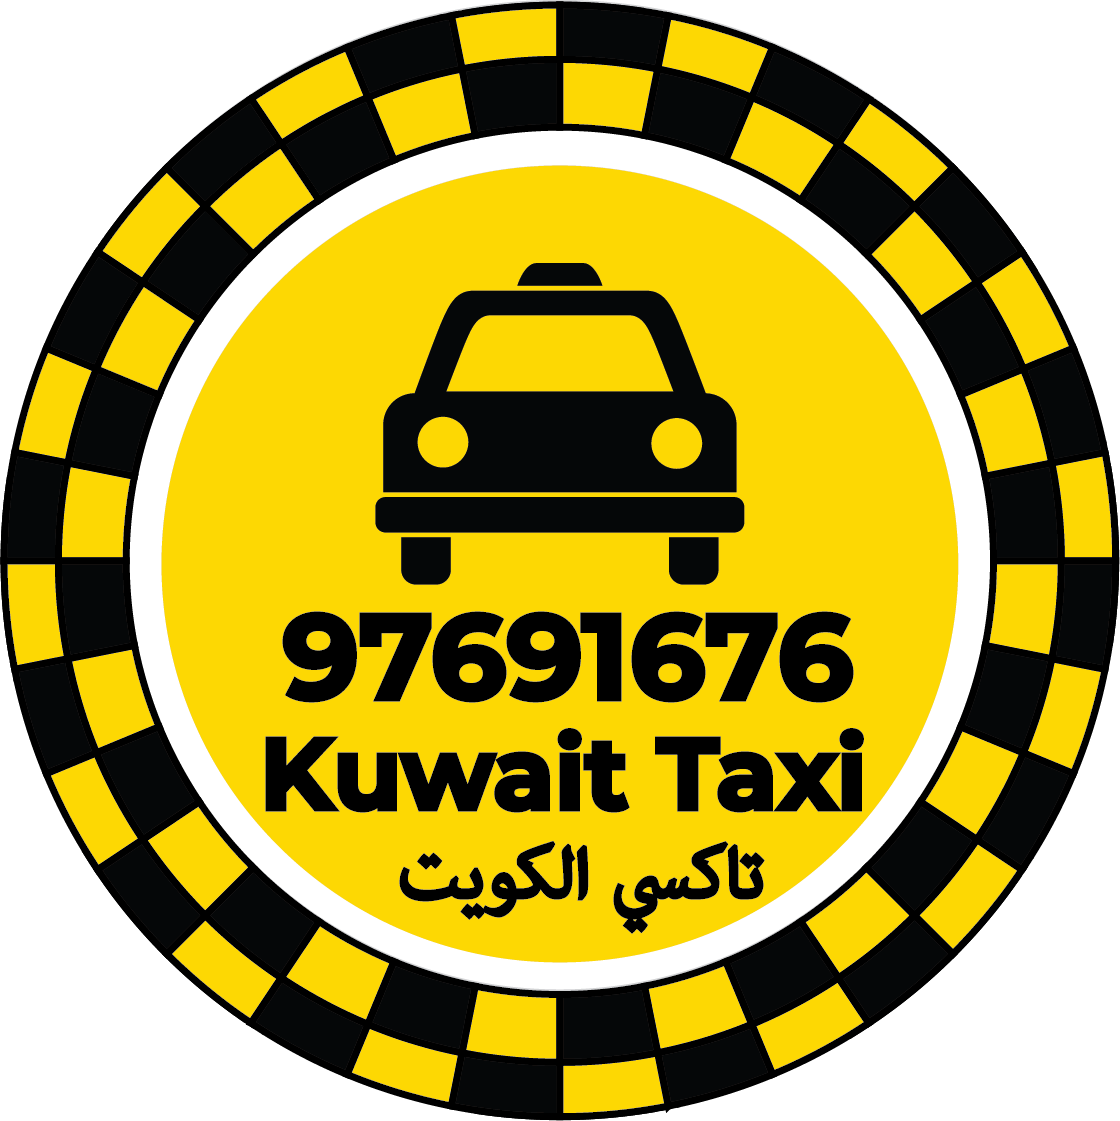 Cheap Taxi in Kuwait